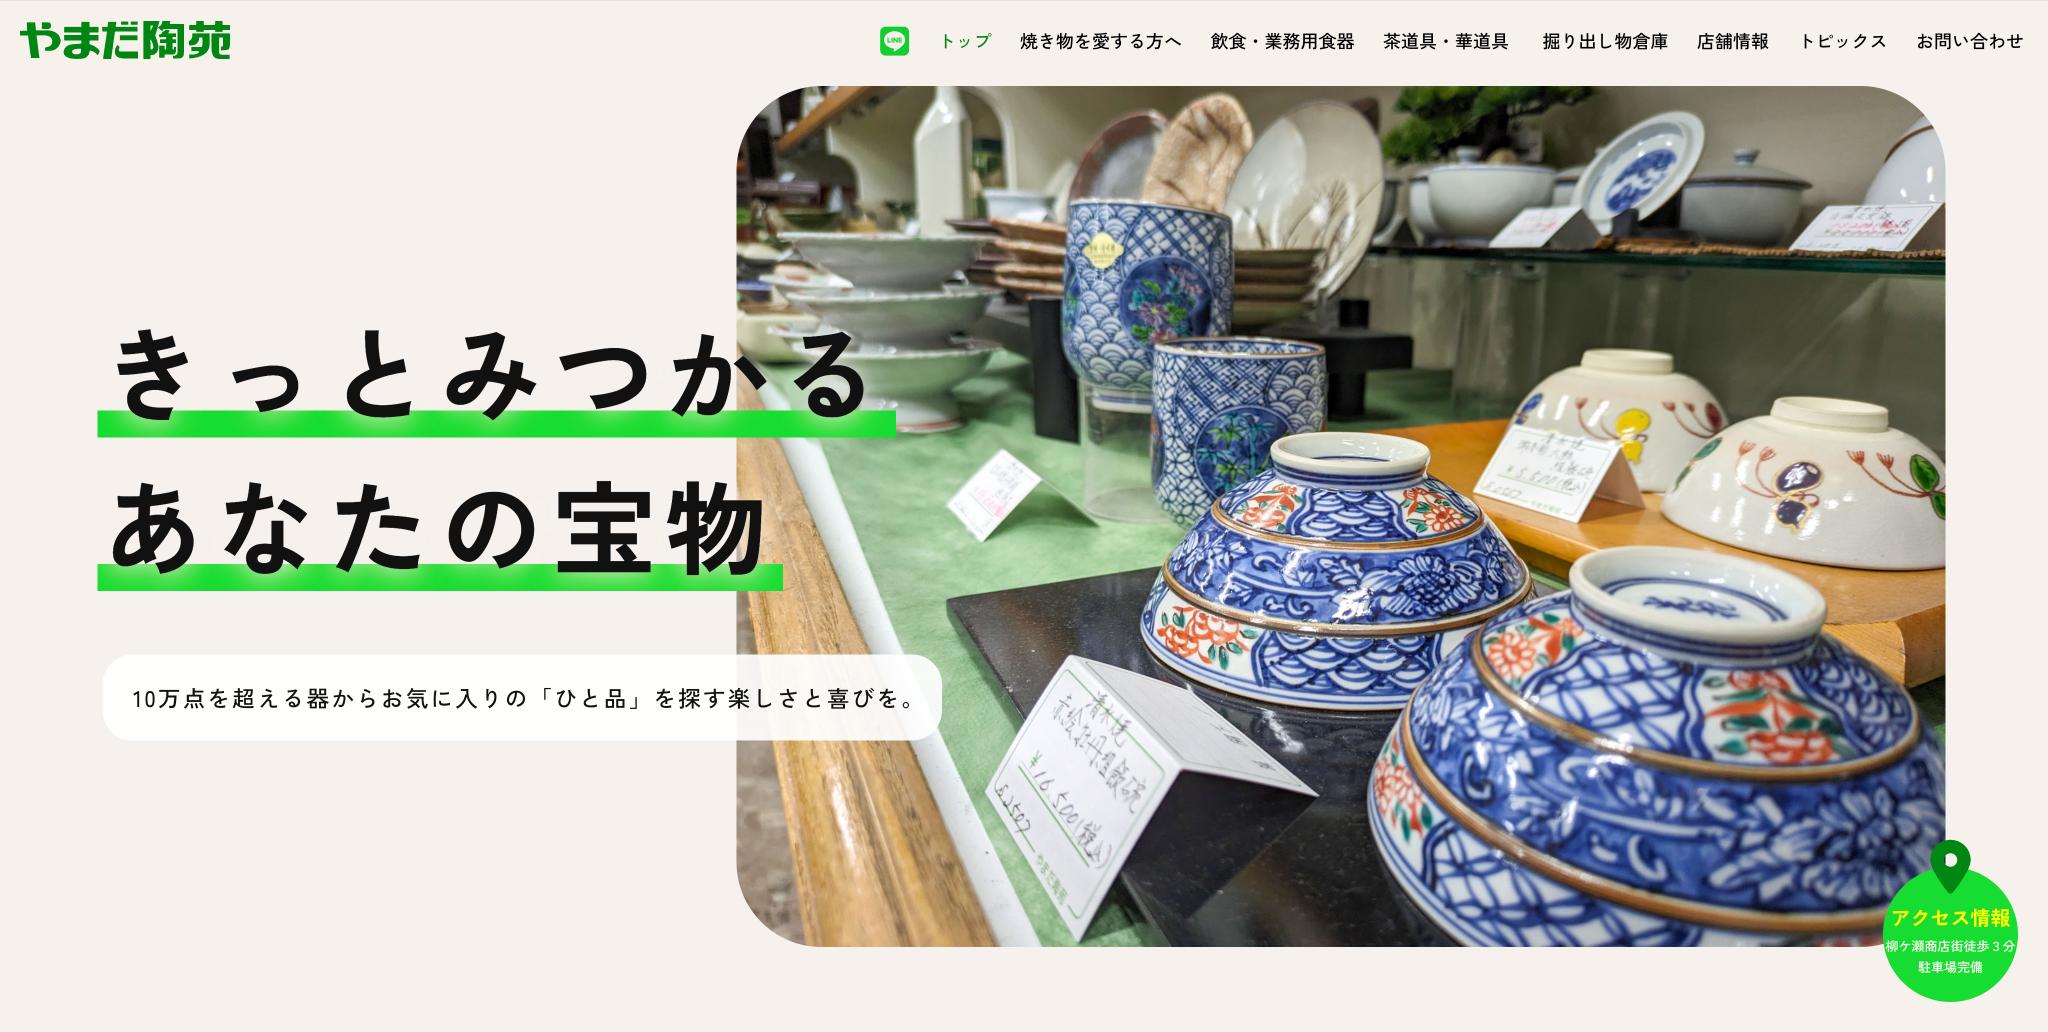 岐阜市の陶器、漆器、茶・華道具などの器の専門店、やまだ陶苑様ホームページファーストビュー